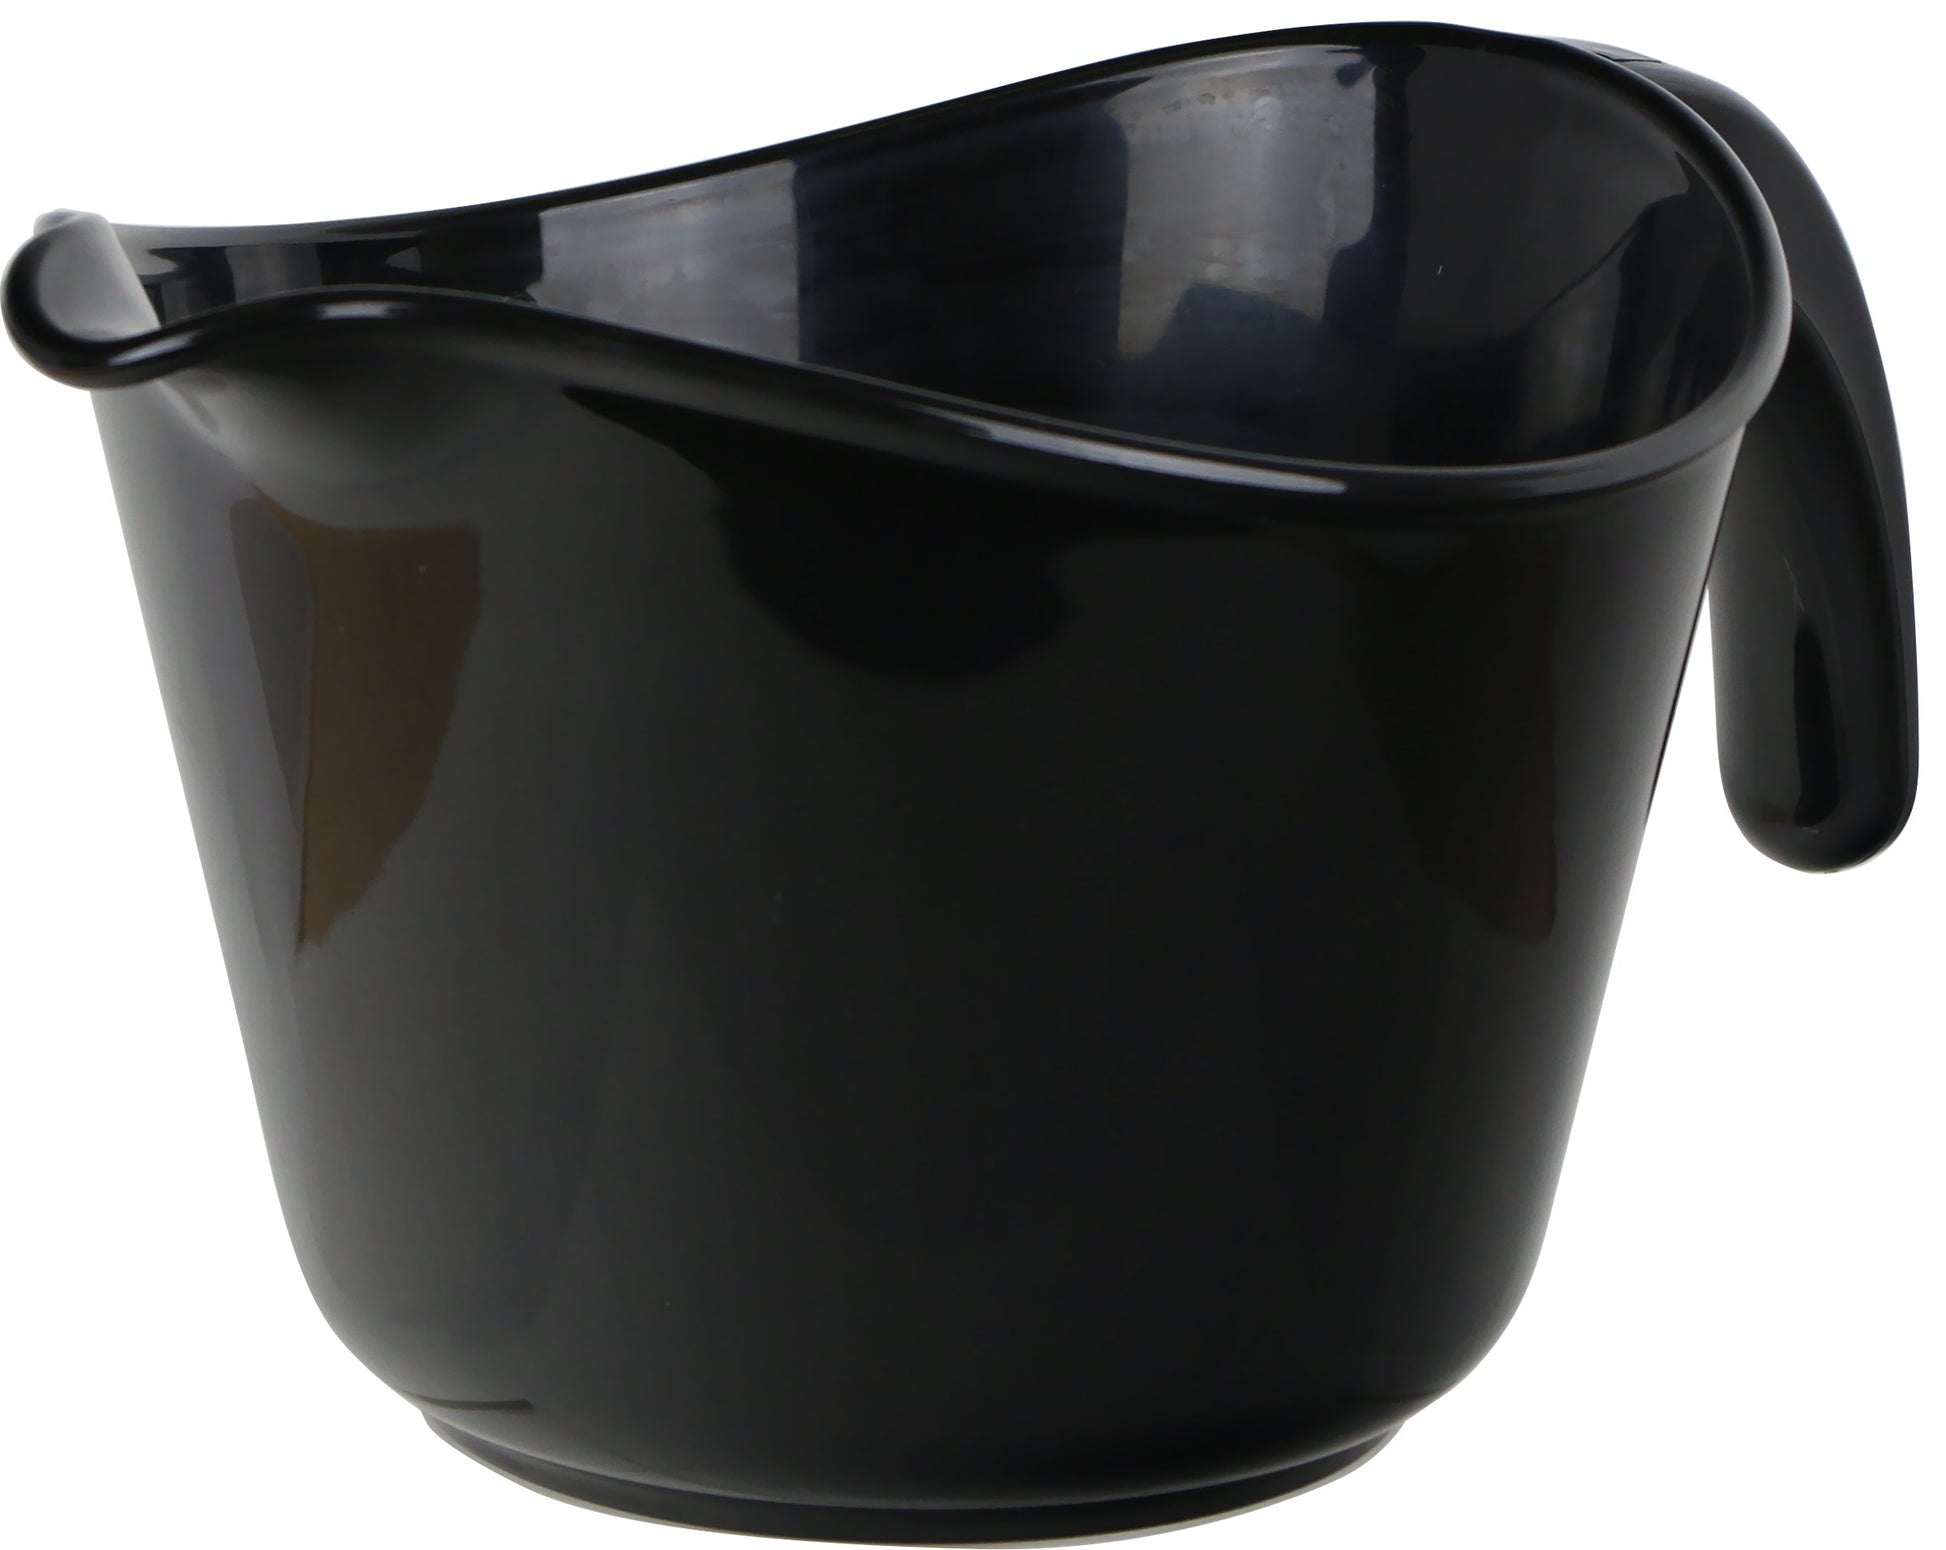 black batter bowl on white background.